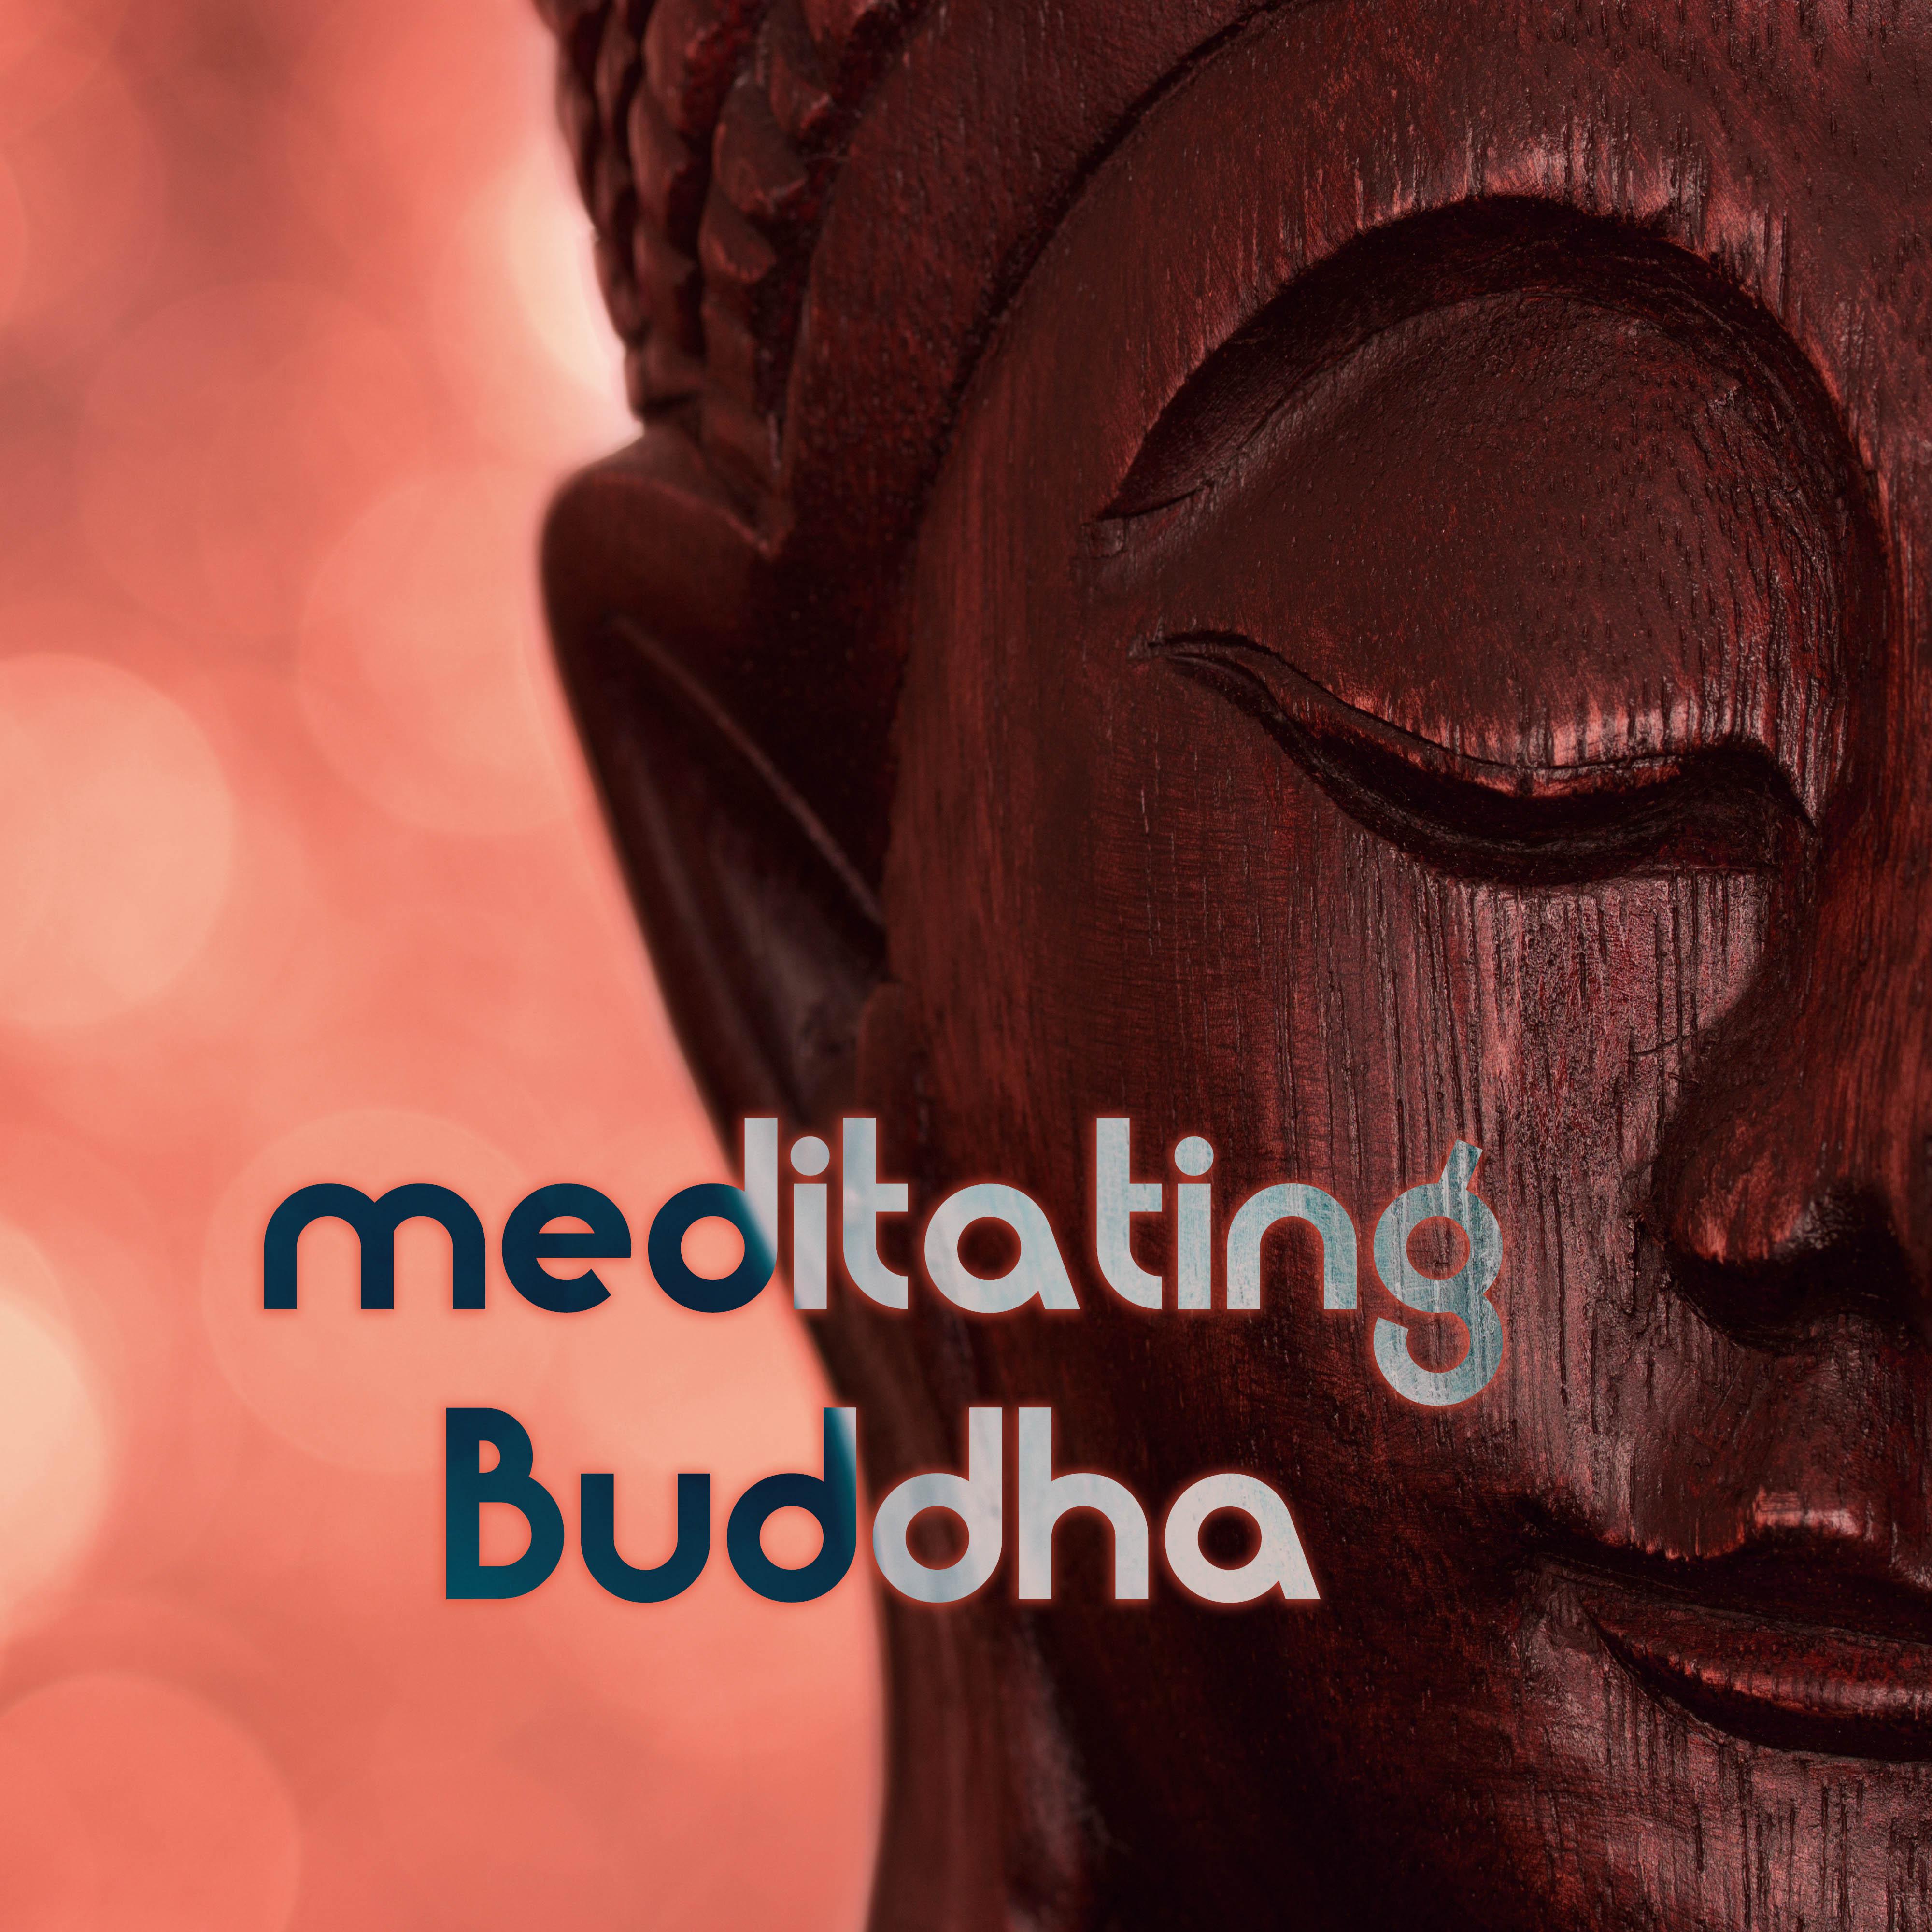 Meditating Buddha (Buddhist Meditation Music)